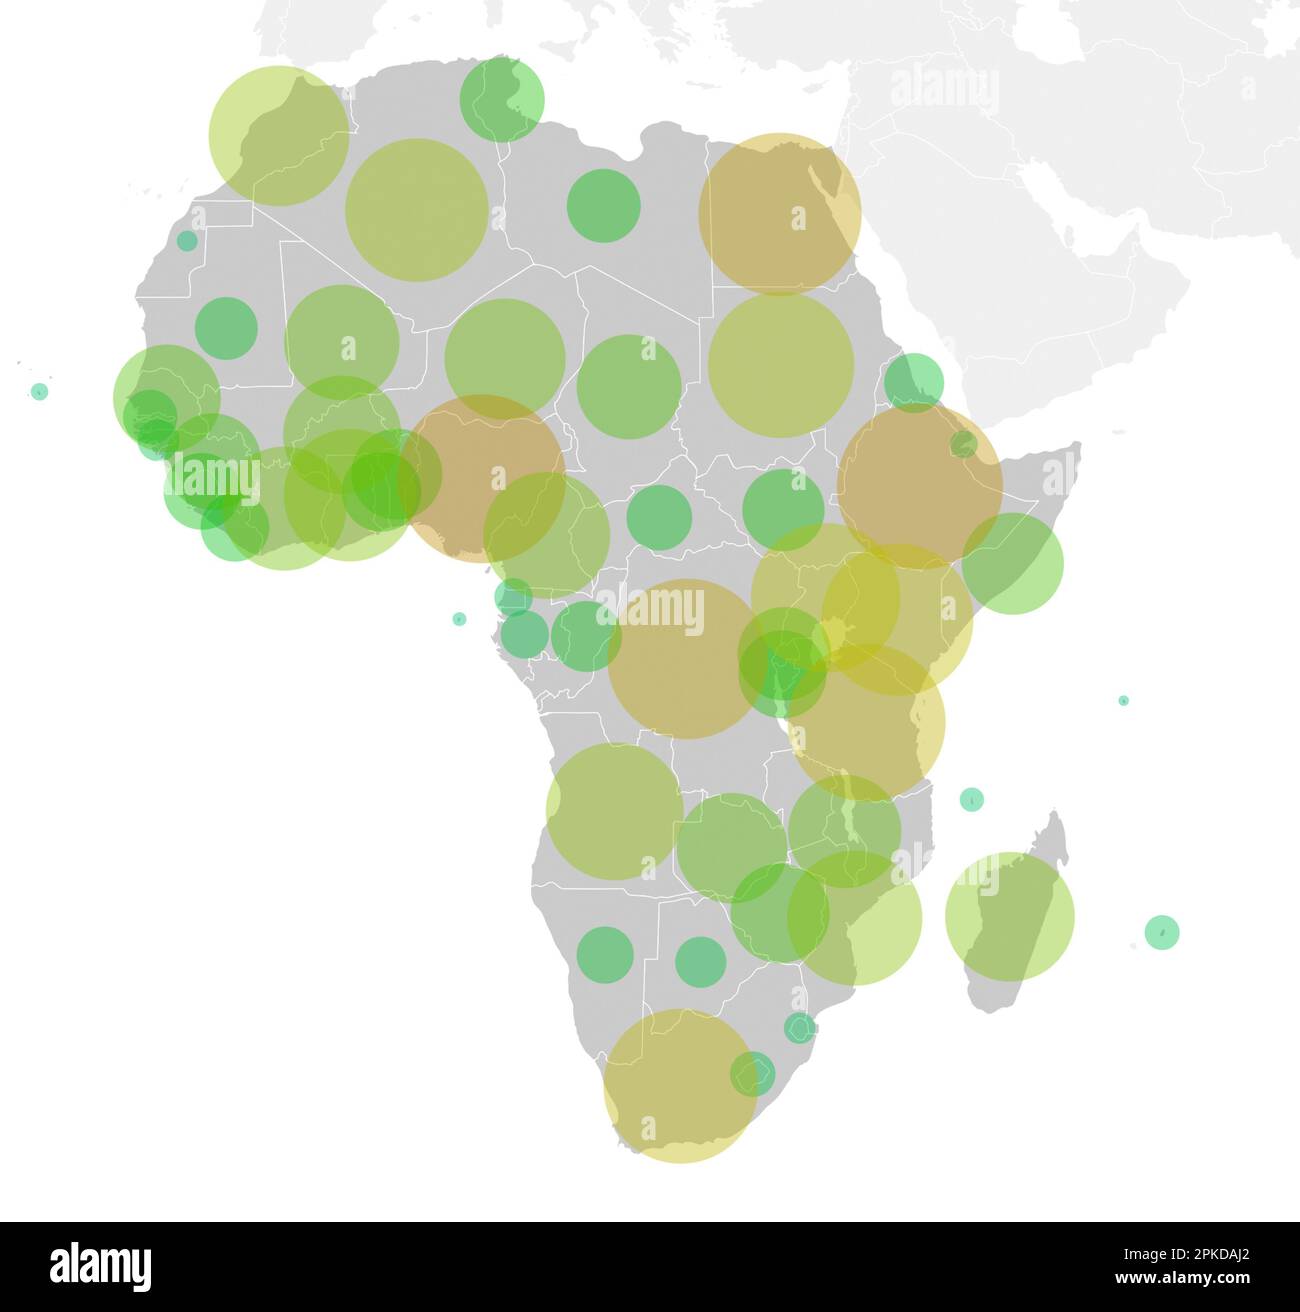 Mappa del continente africano con cerchi verdi-arancioni che rappresentano la popolazione di ogni paese. Illustrazione grafica della popolazione nei paesi africani. Foto Stock